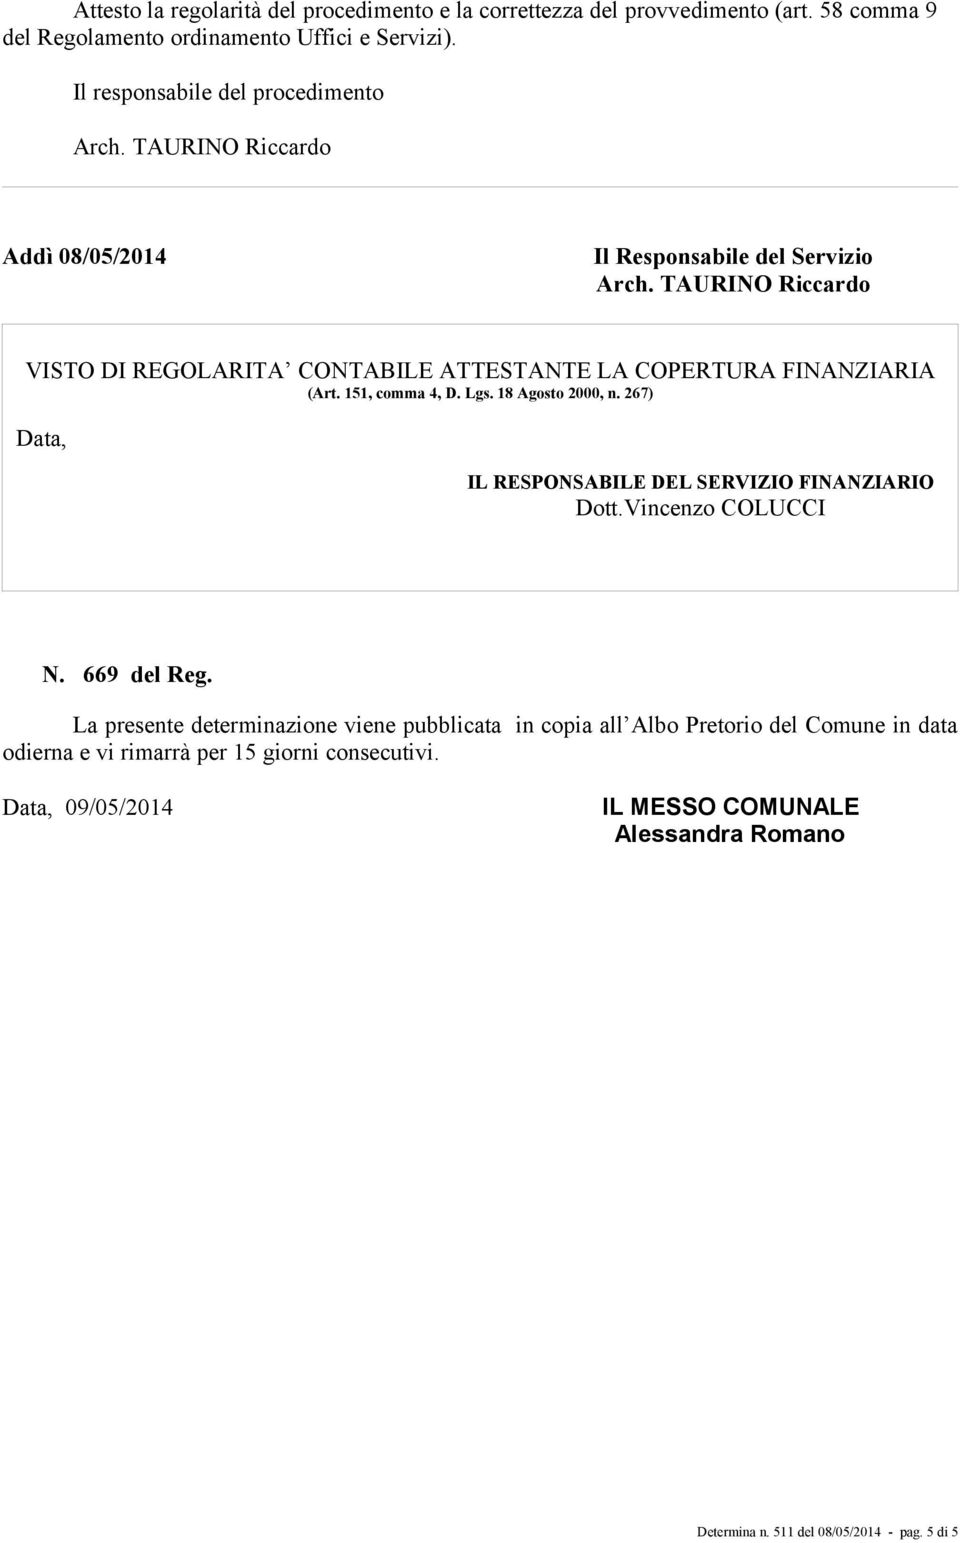 Lgs. 18 Agosto 2000, n. 267) Data, IL RESPONSABILE DEL SERVIZIO FINANZIARIO Dott.Vincenzo COLUCCI N. 669 del Reg.